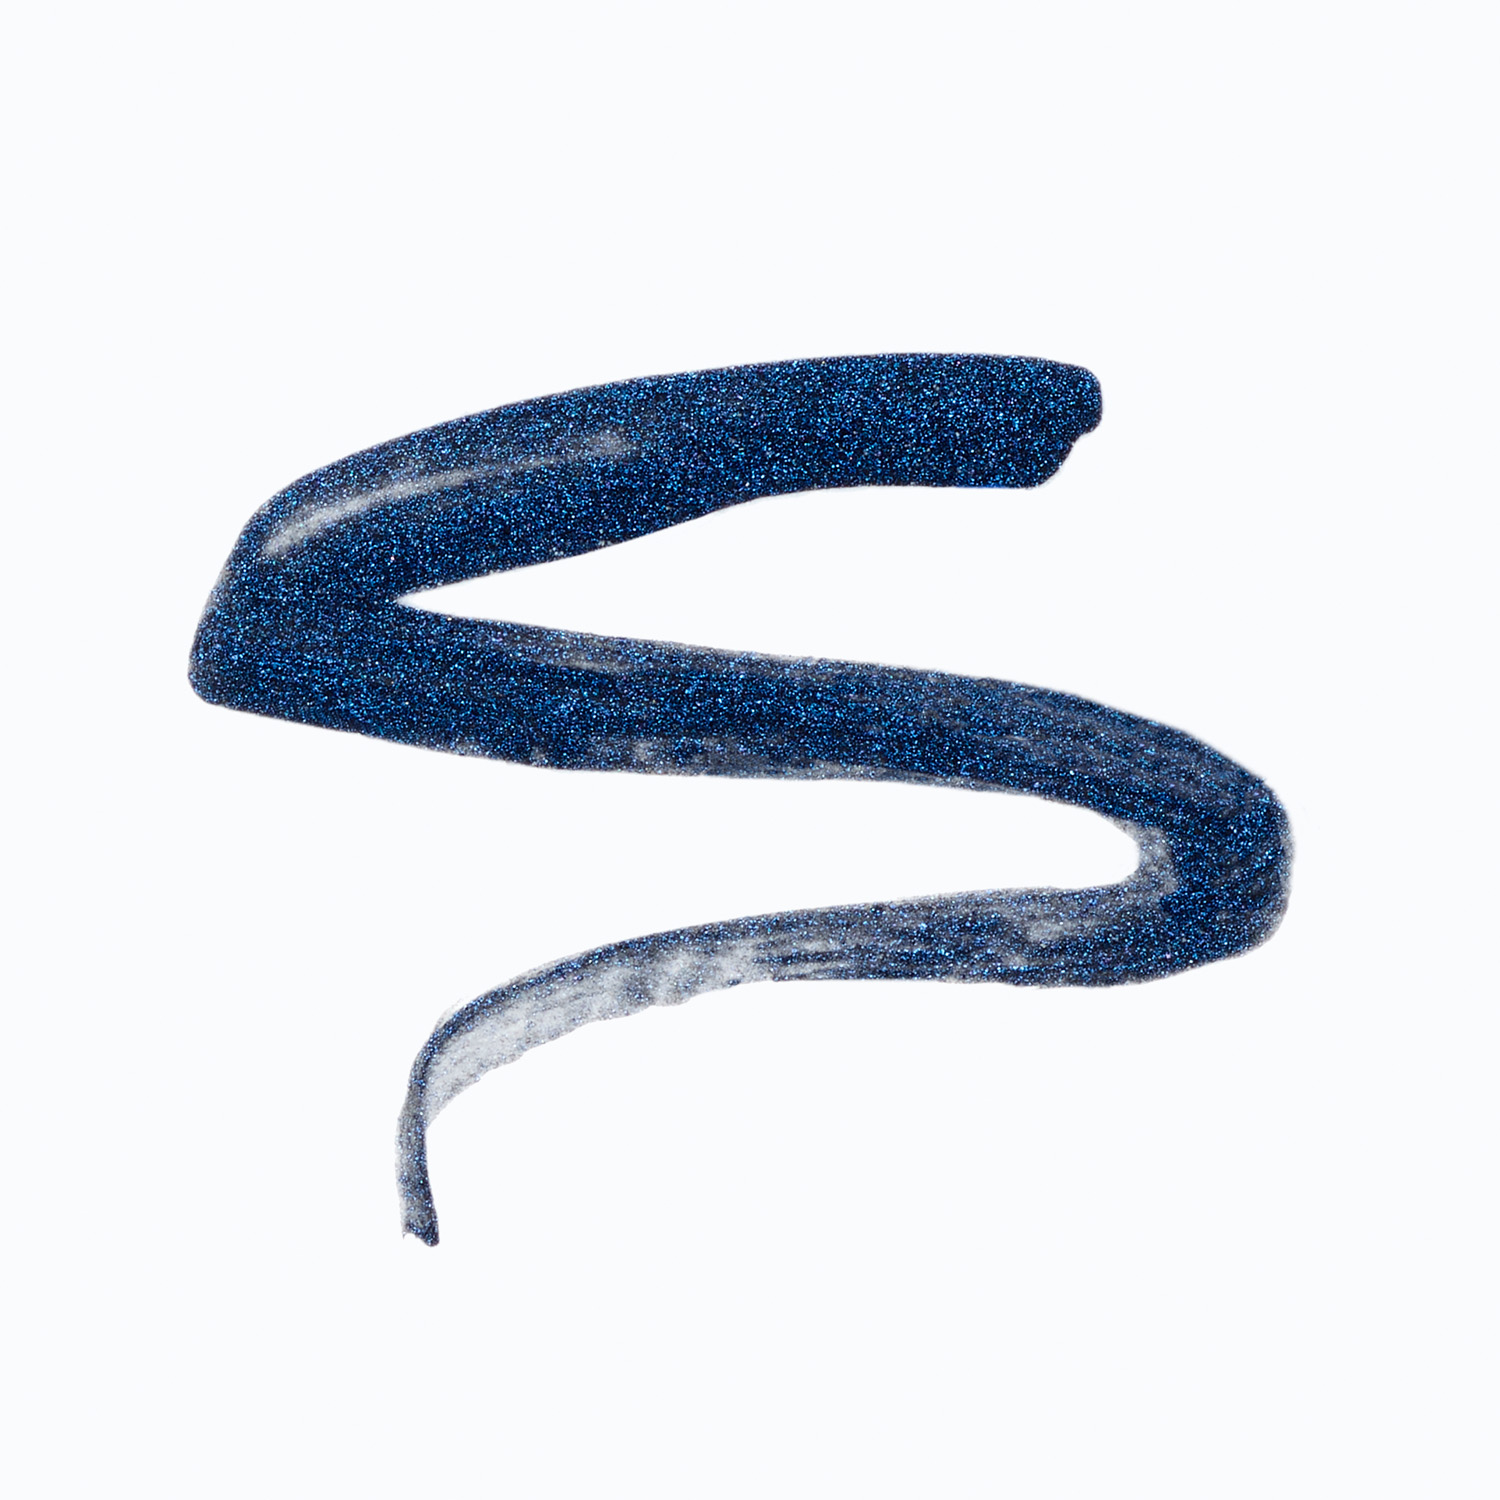 af94 Backline Liquid Eyeliner, Sum1 New, Blue - image 3 of 7